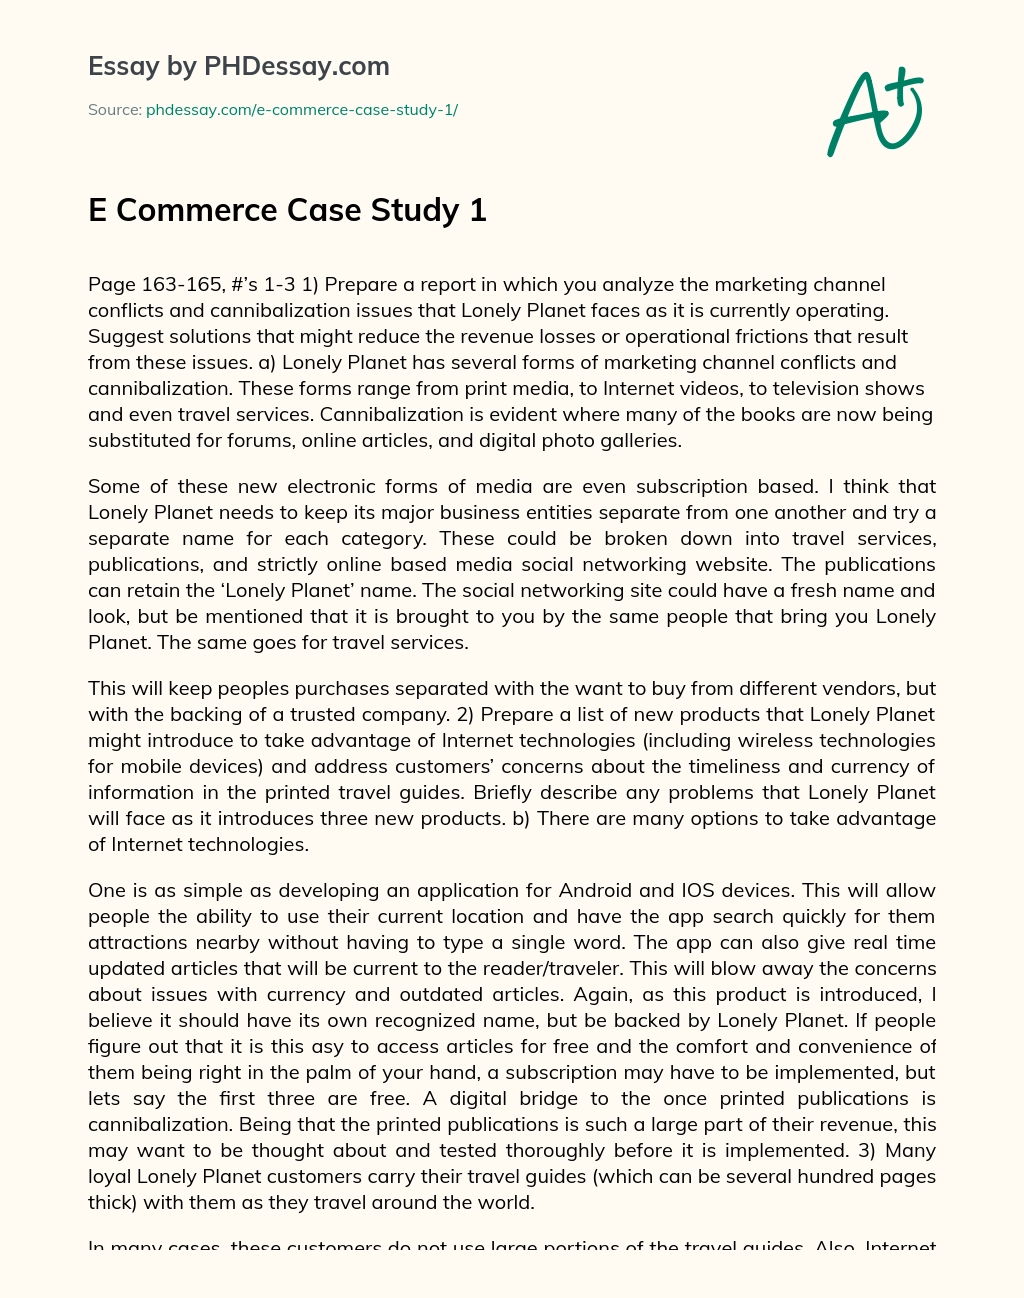 E Commerce Case Study 1 essay